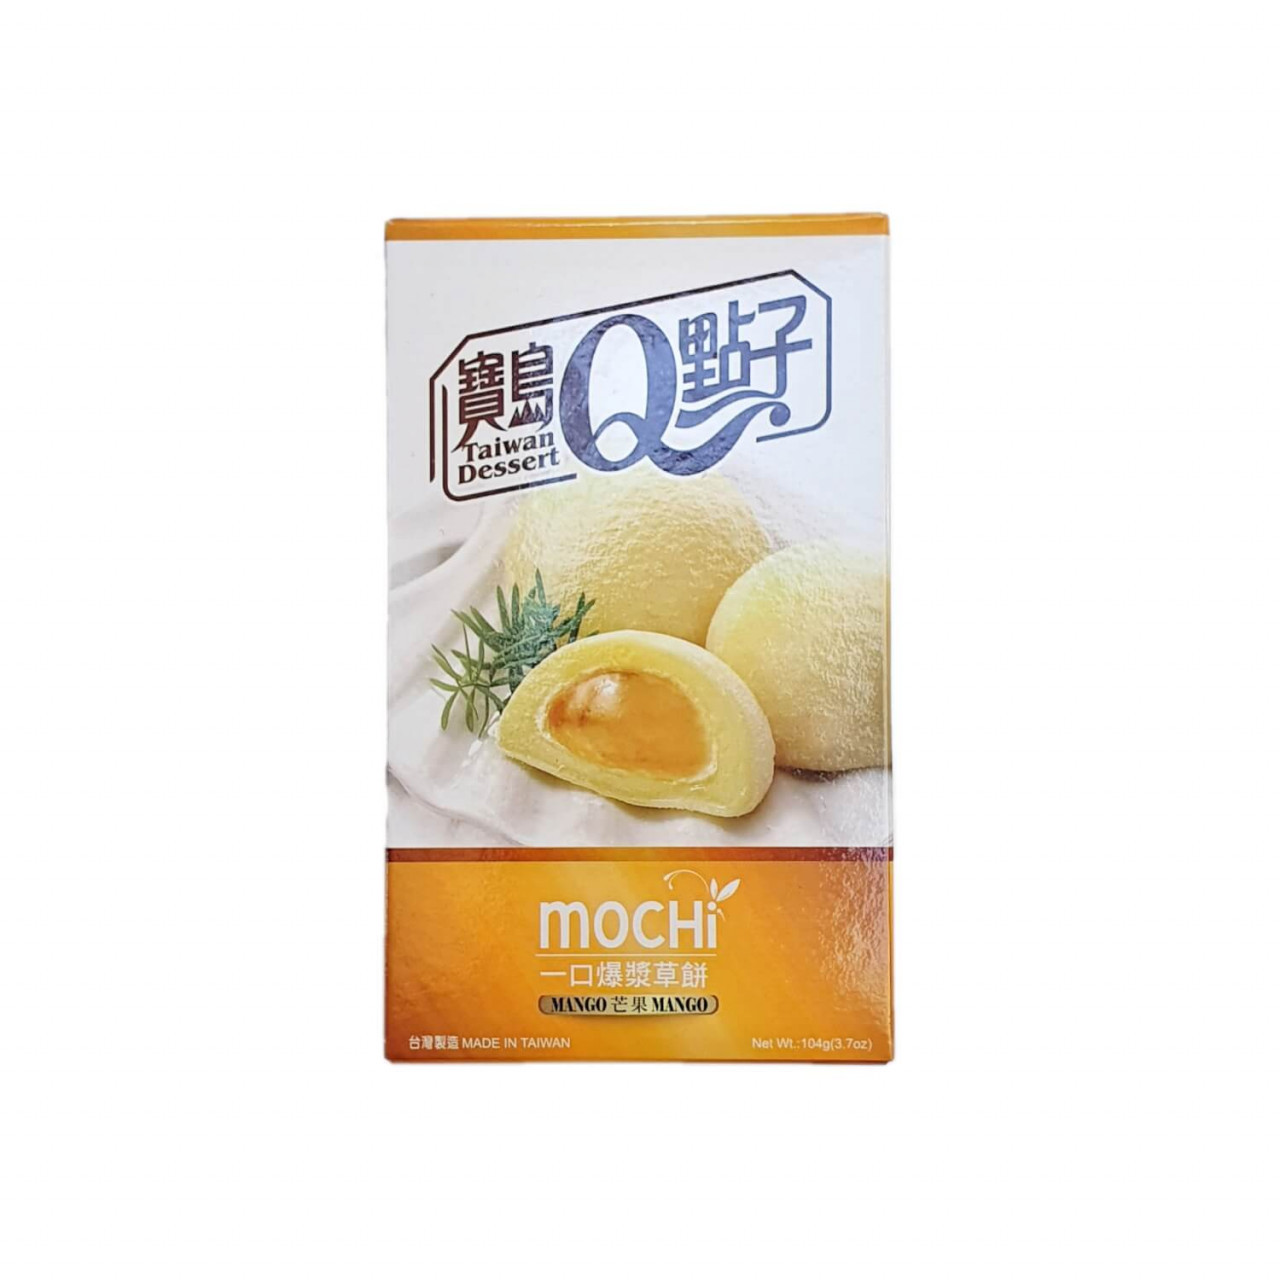 Rýžové koláčky Mochi Mango PO EXPIRACI (104g)